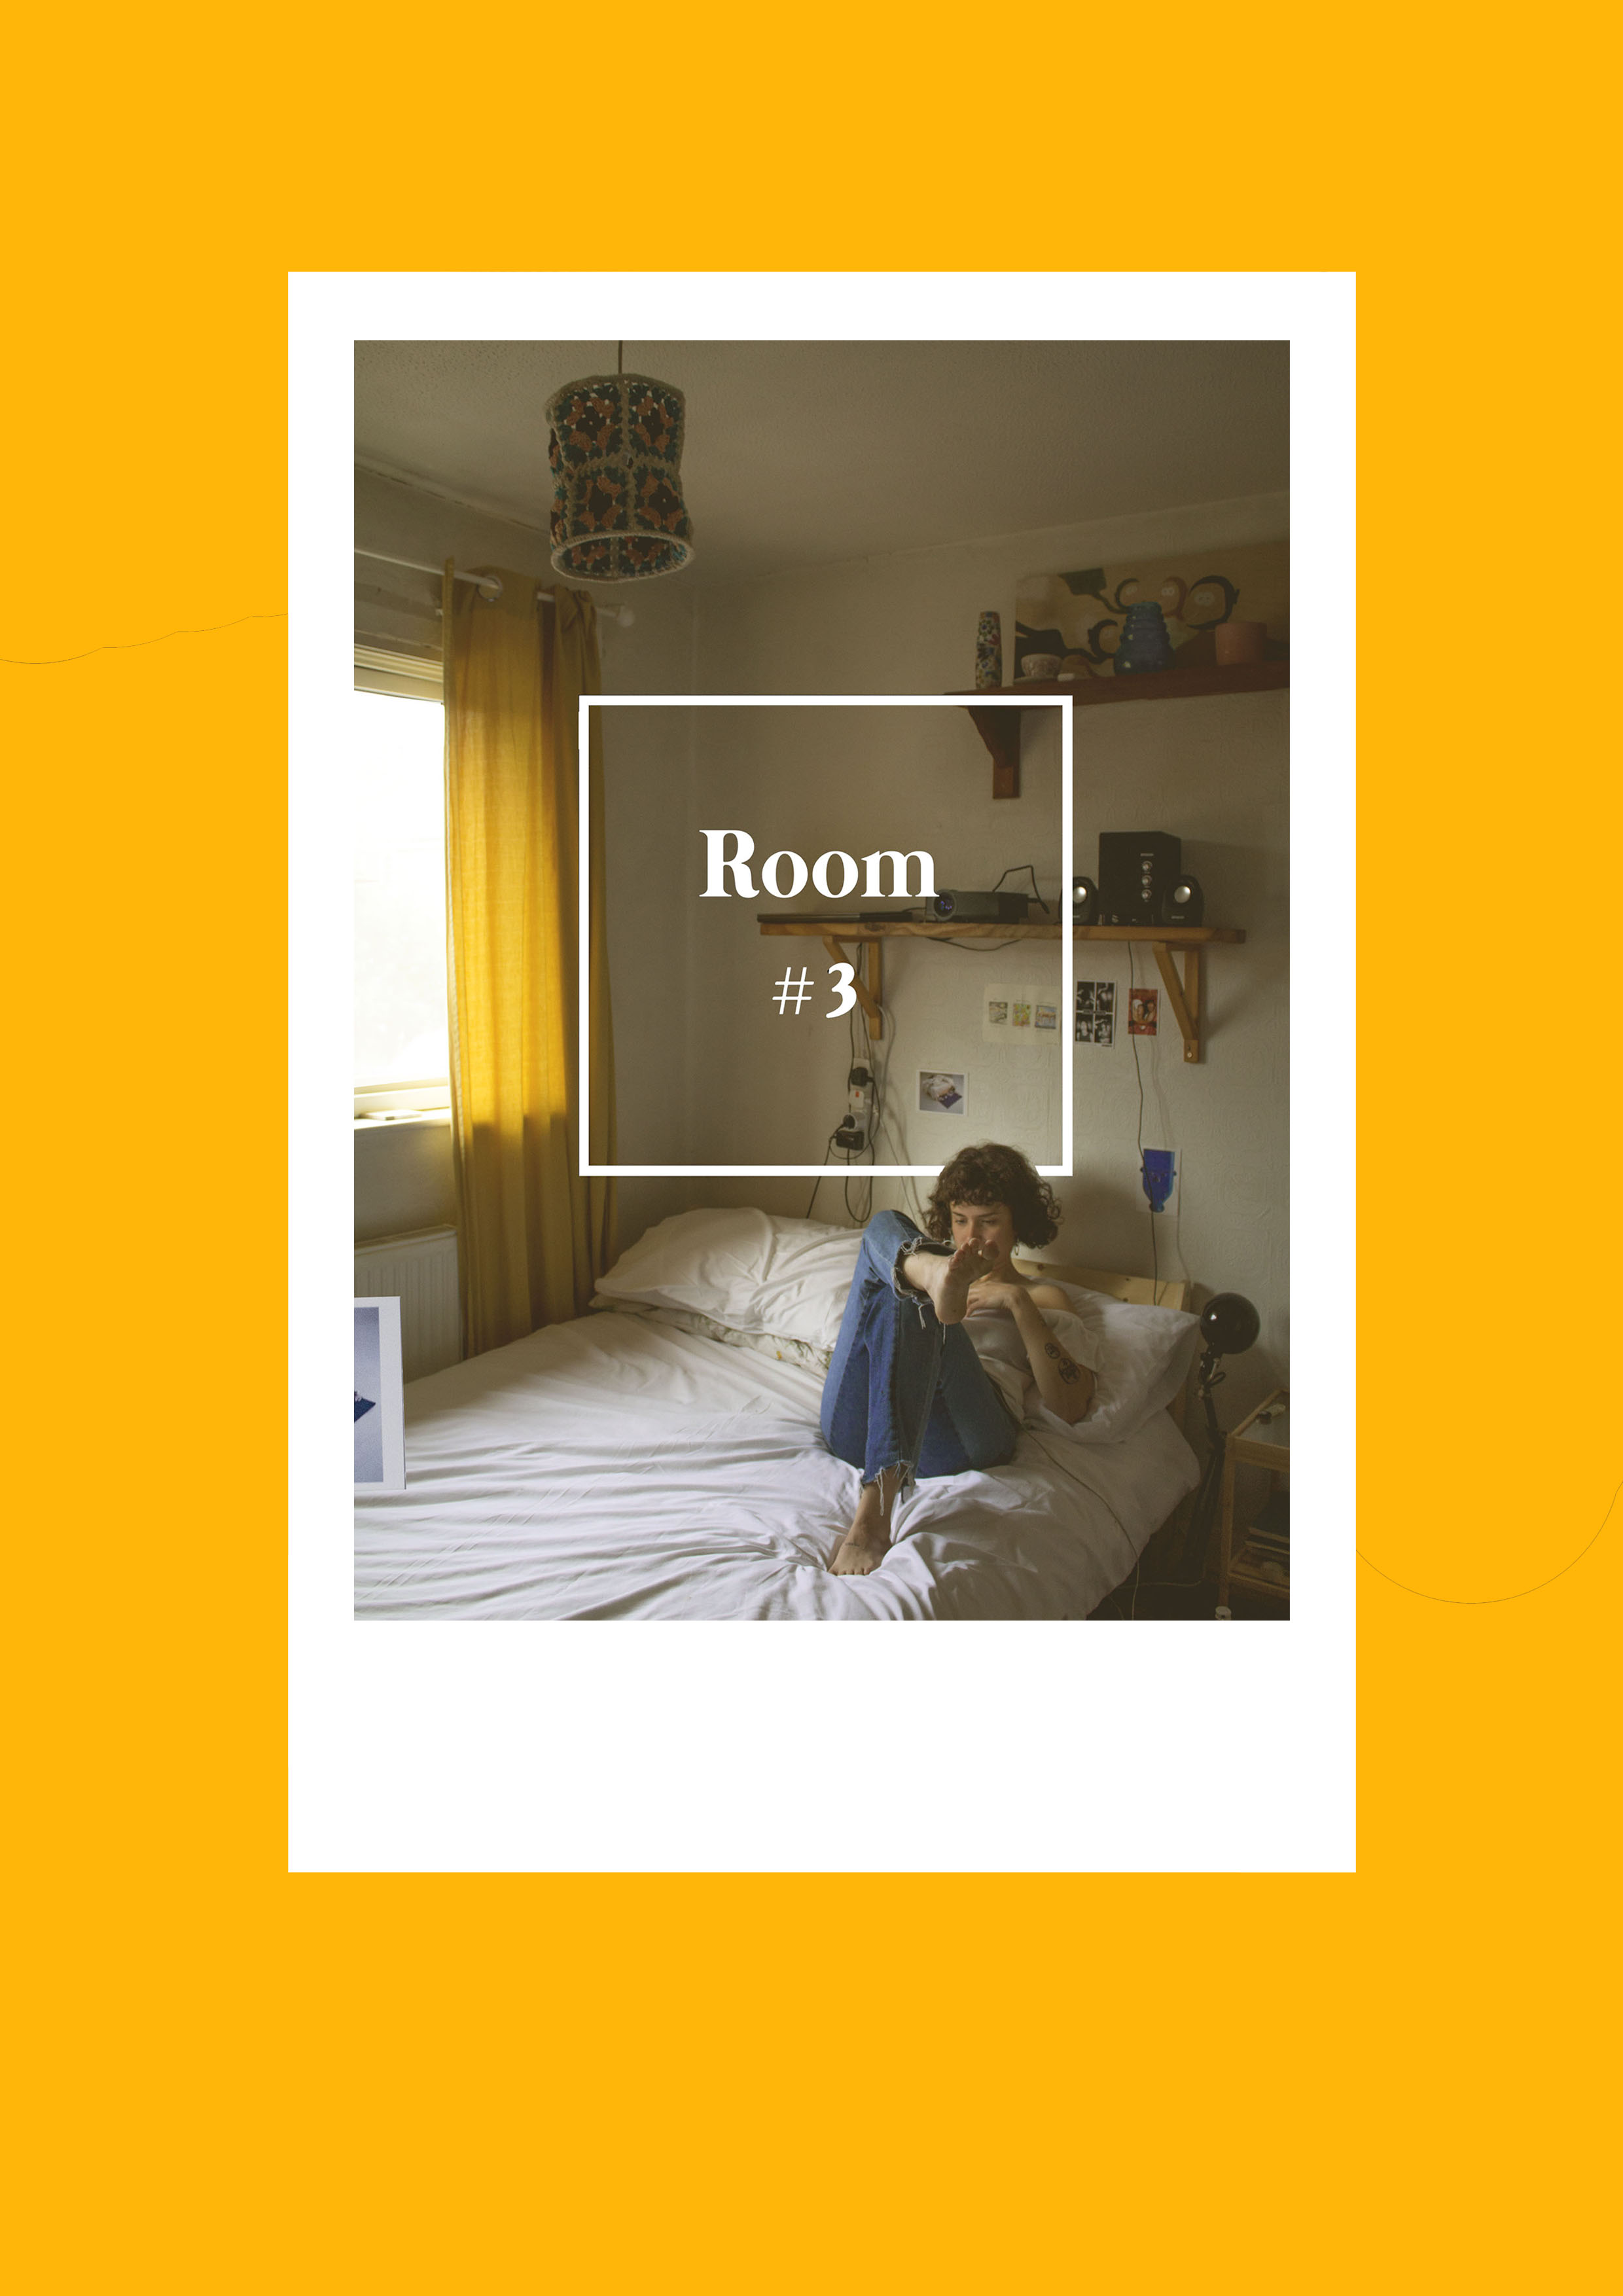 Room #4